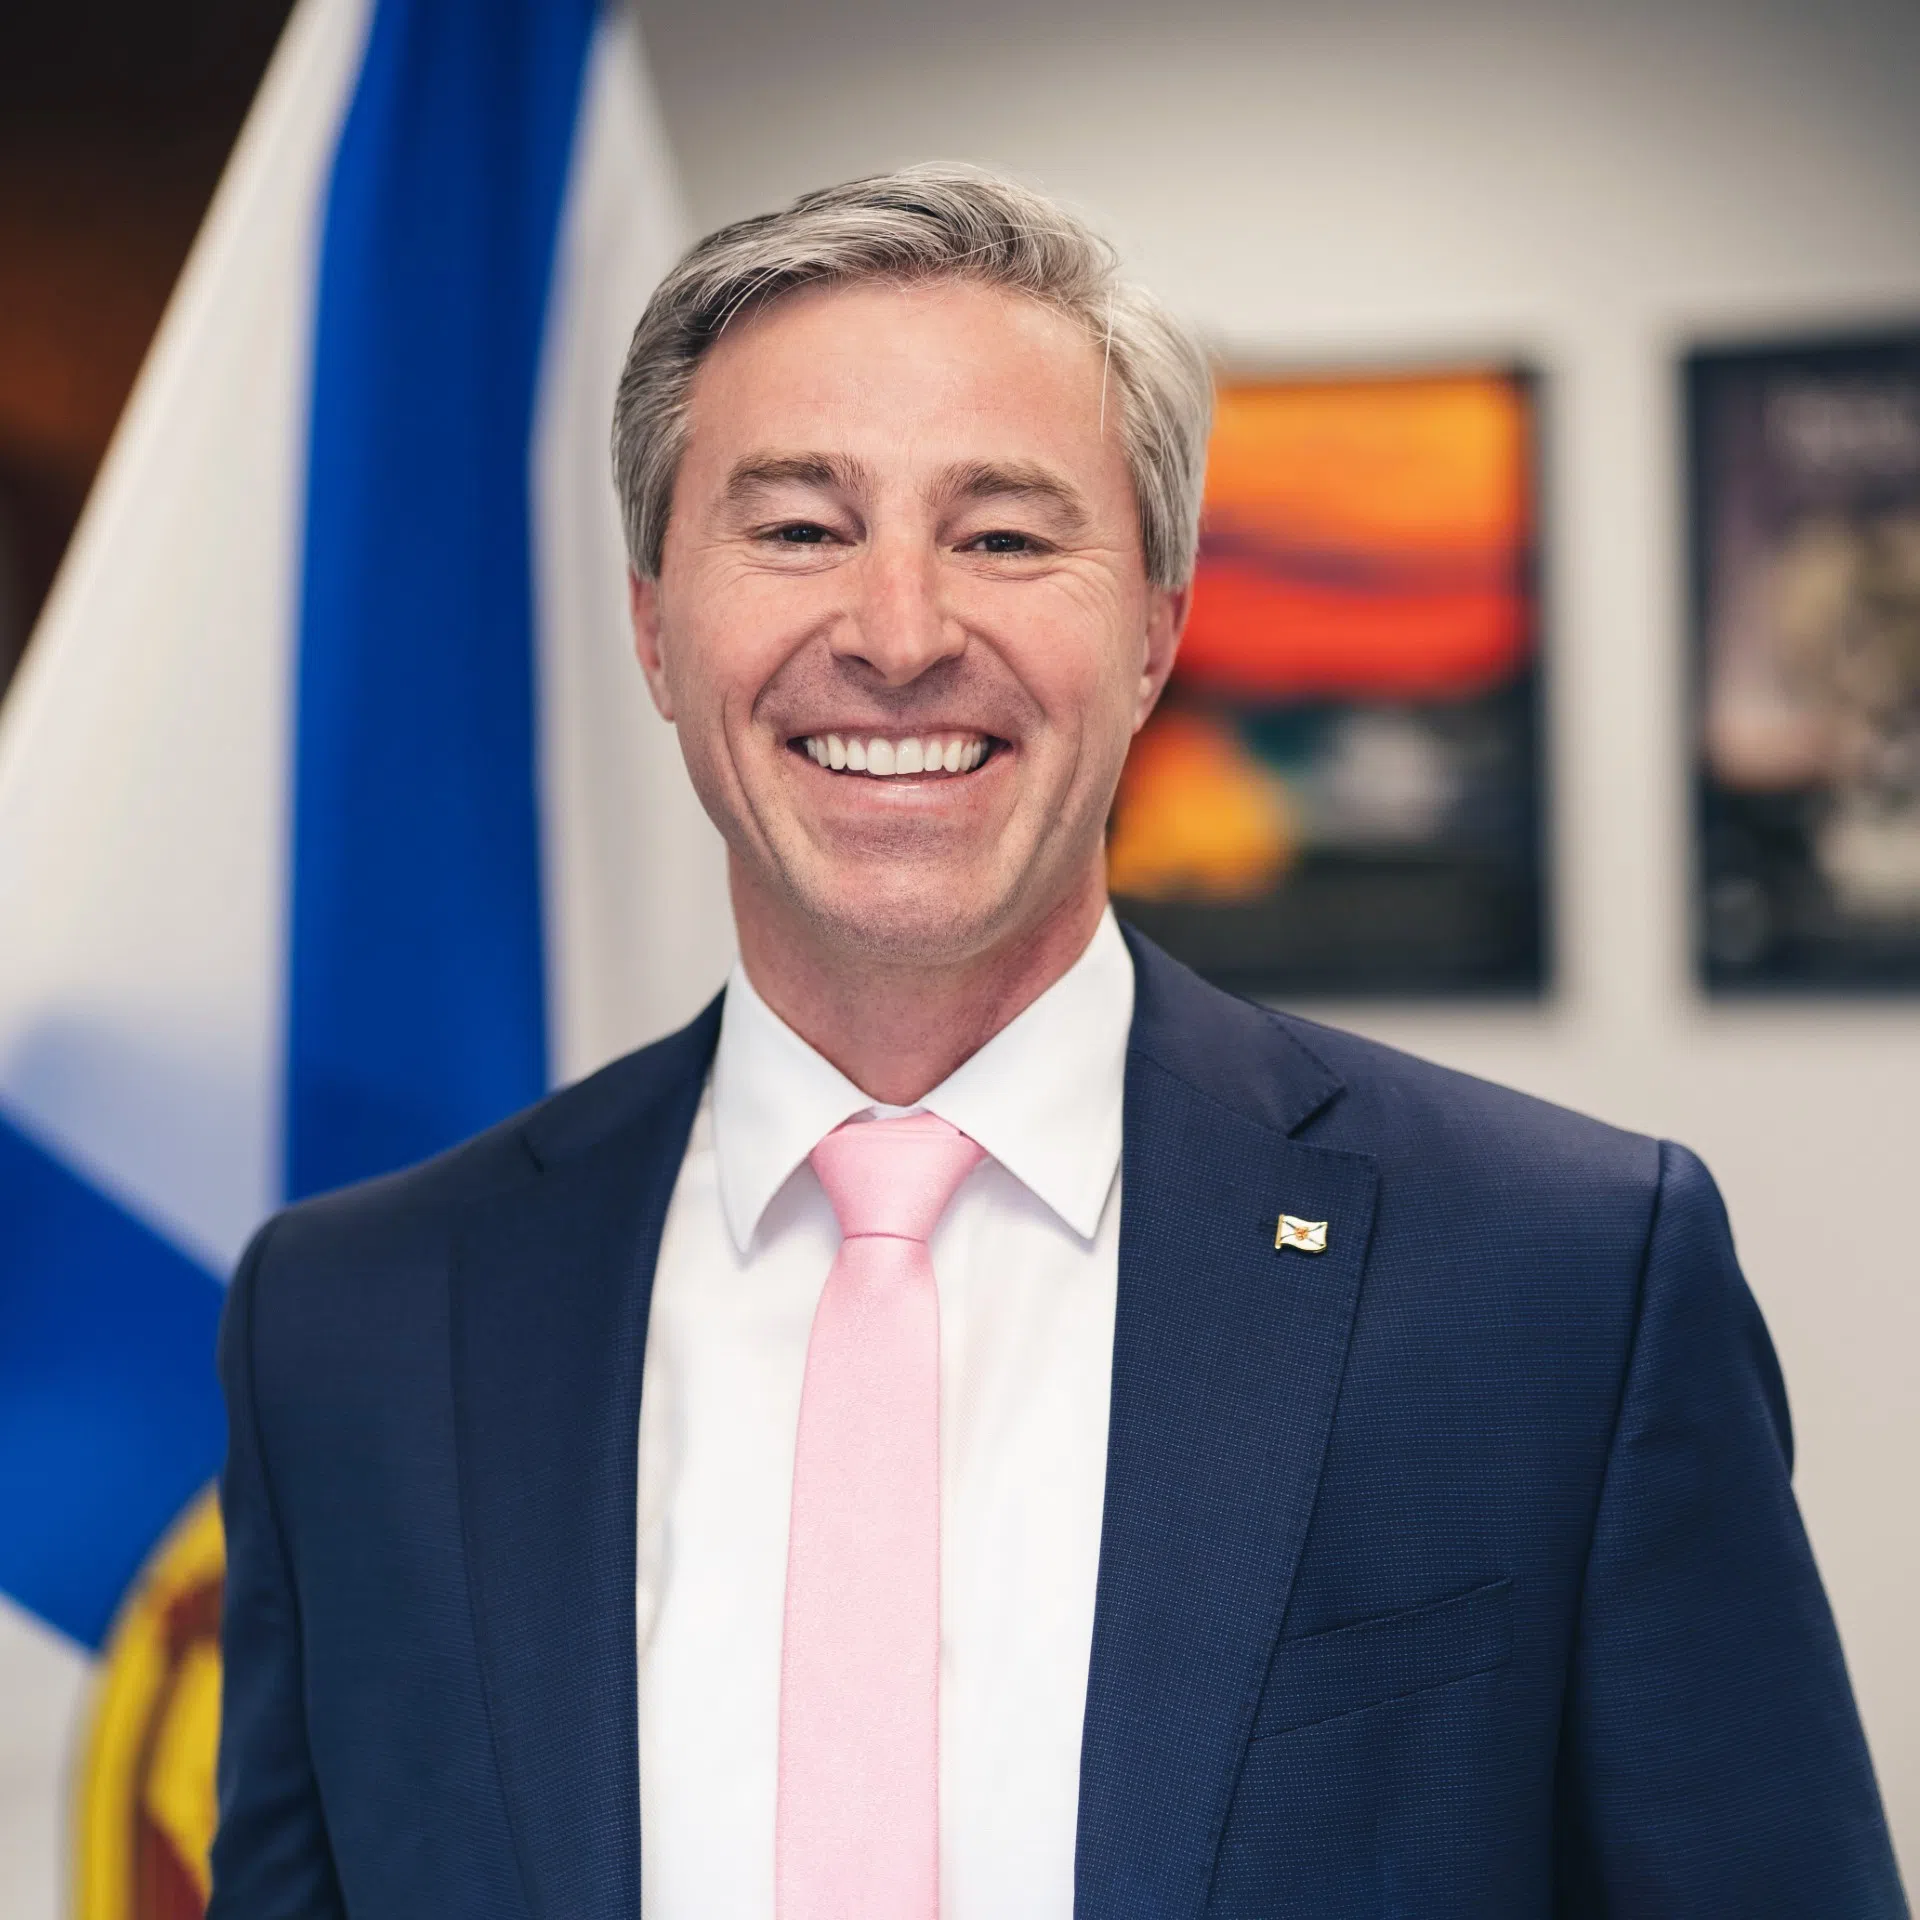 Podcast: Tim Houston provides a mid-mandate update for Nova Scotia